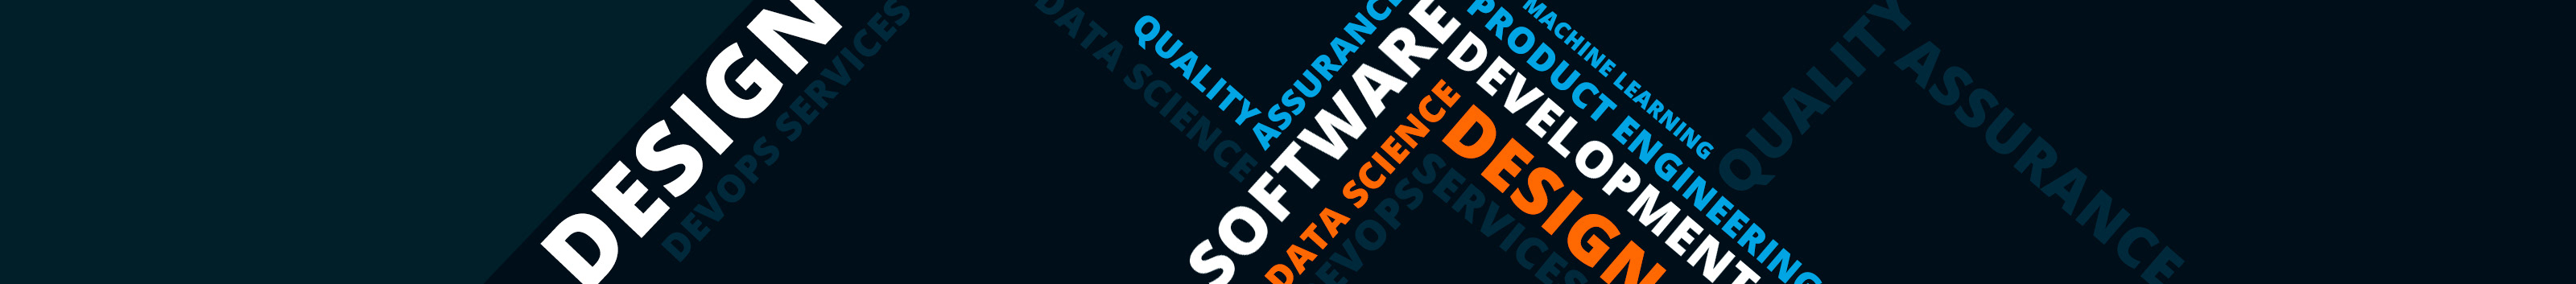 Azati Software's profile banner